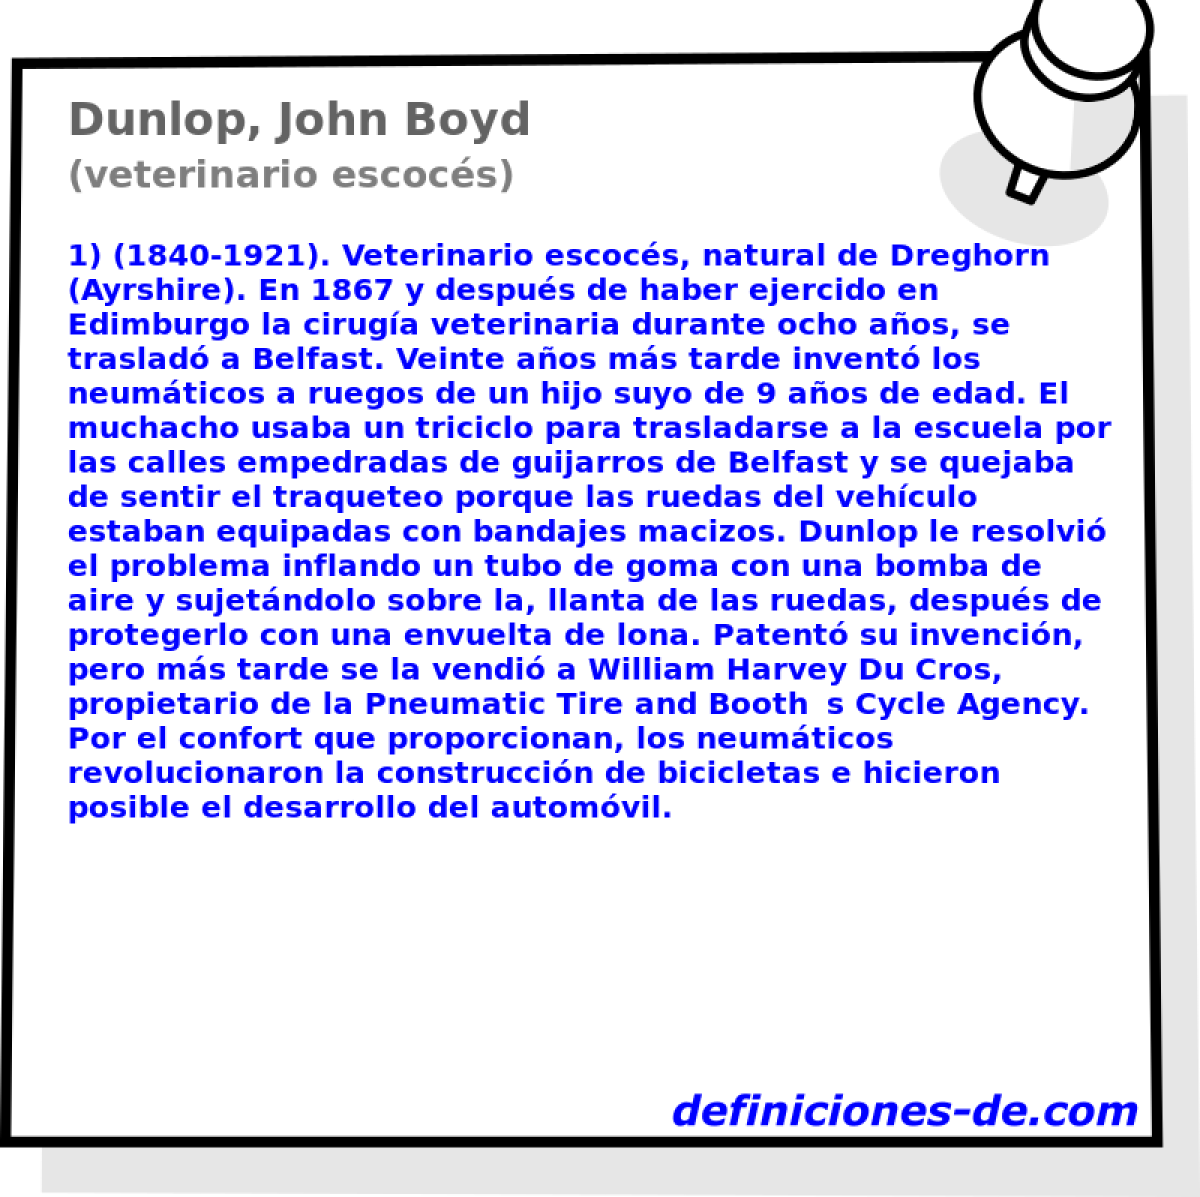 Dunlop, John Boyd (veterinario escocs)